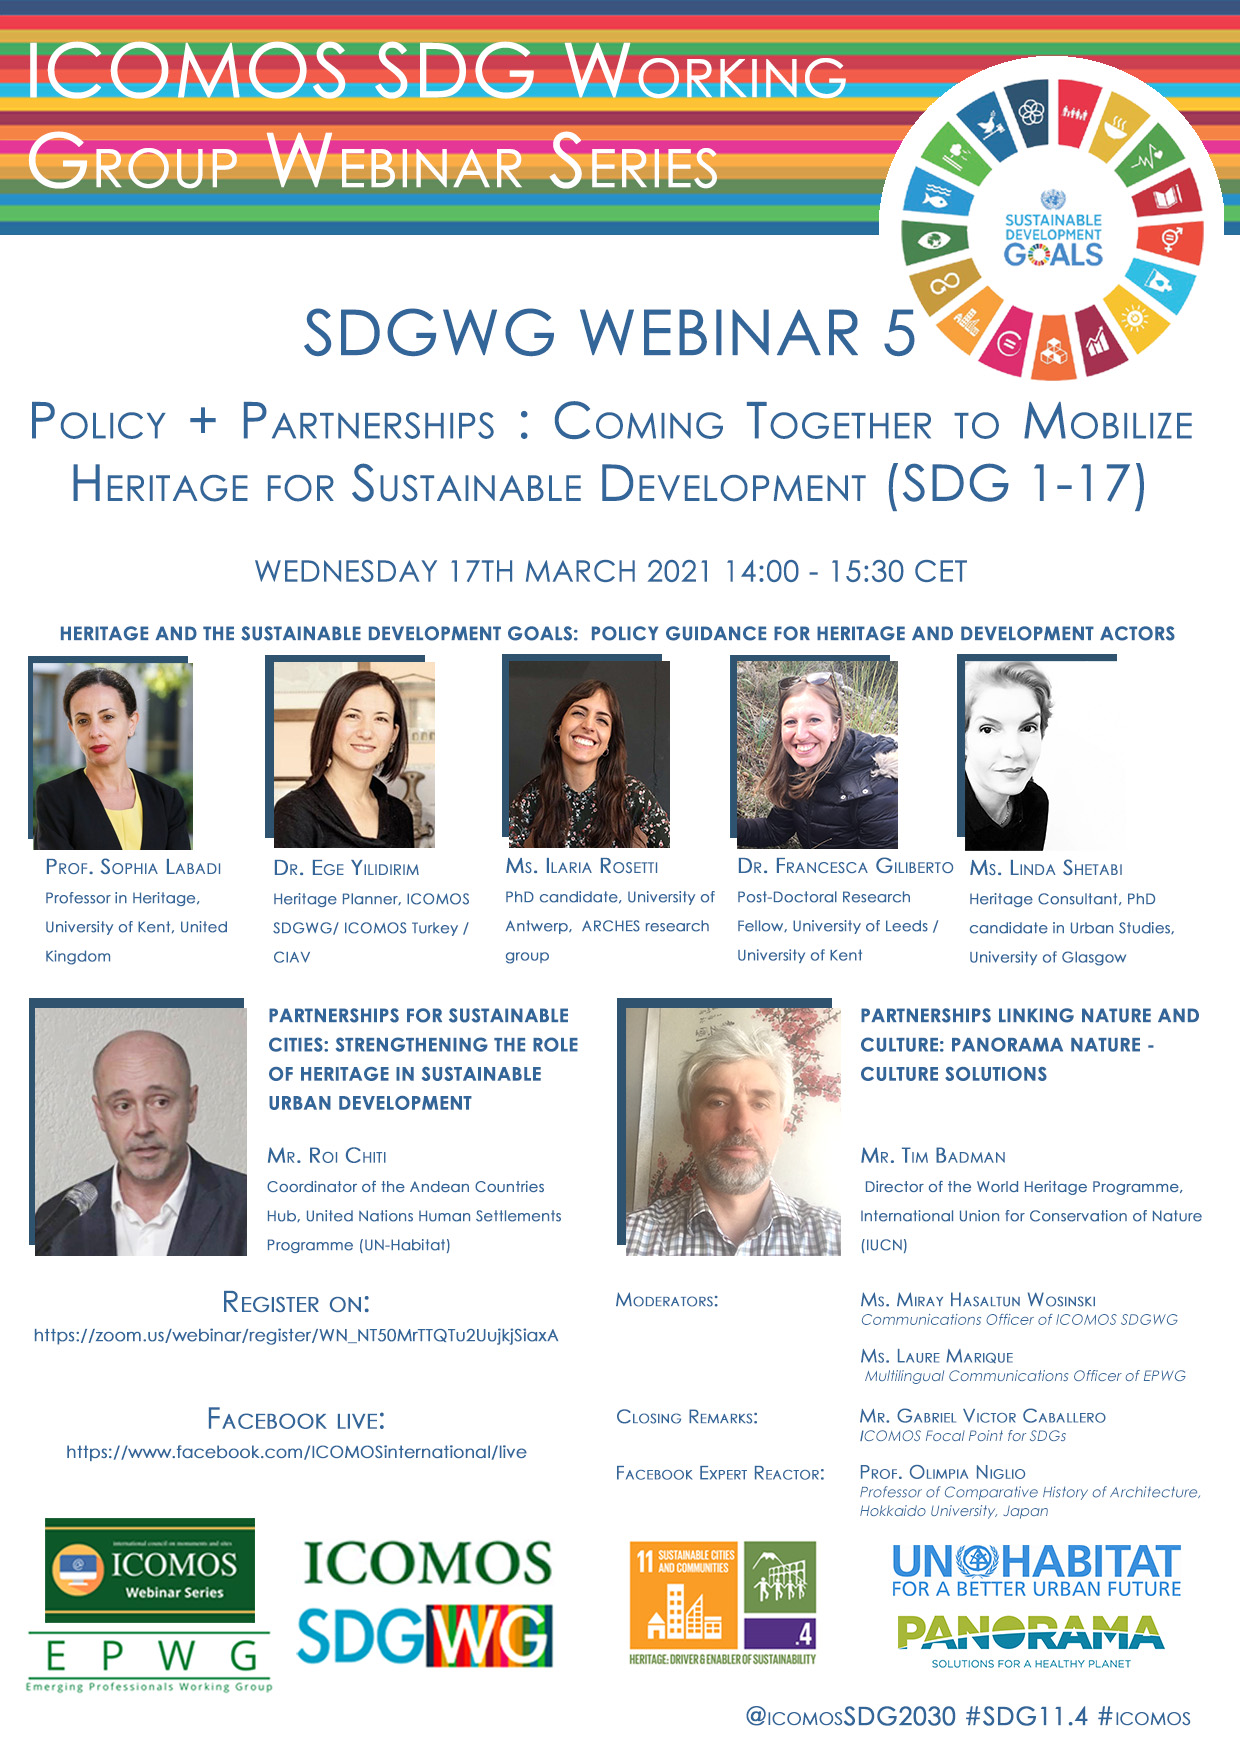 ENG SDGWG webinar5 poster